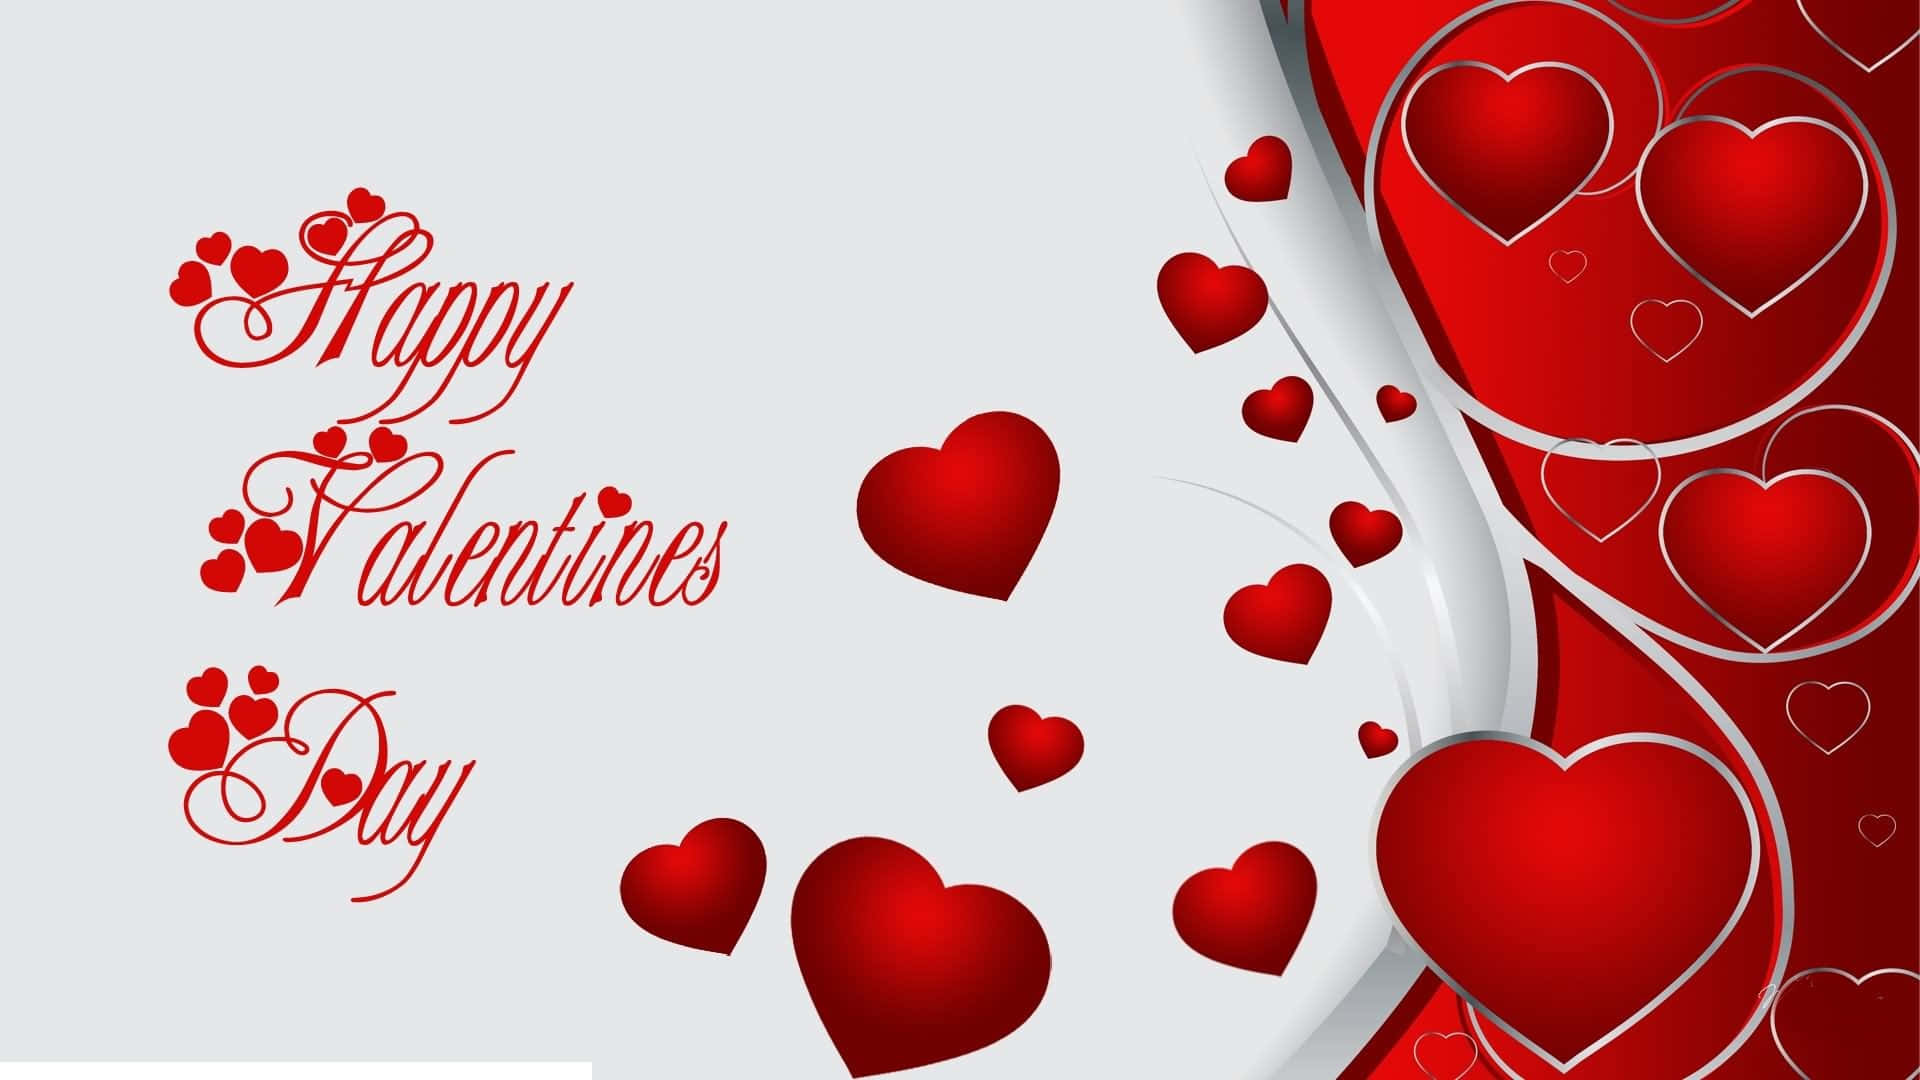 Feiernsie Ihre Liebe Am Valentinstag Mit Diesem Schönen Herz Hd-hintergrundbild! Wallpaper